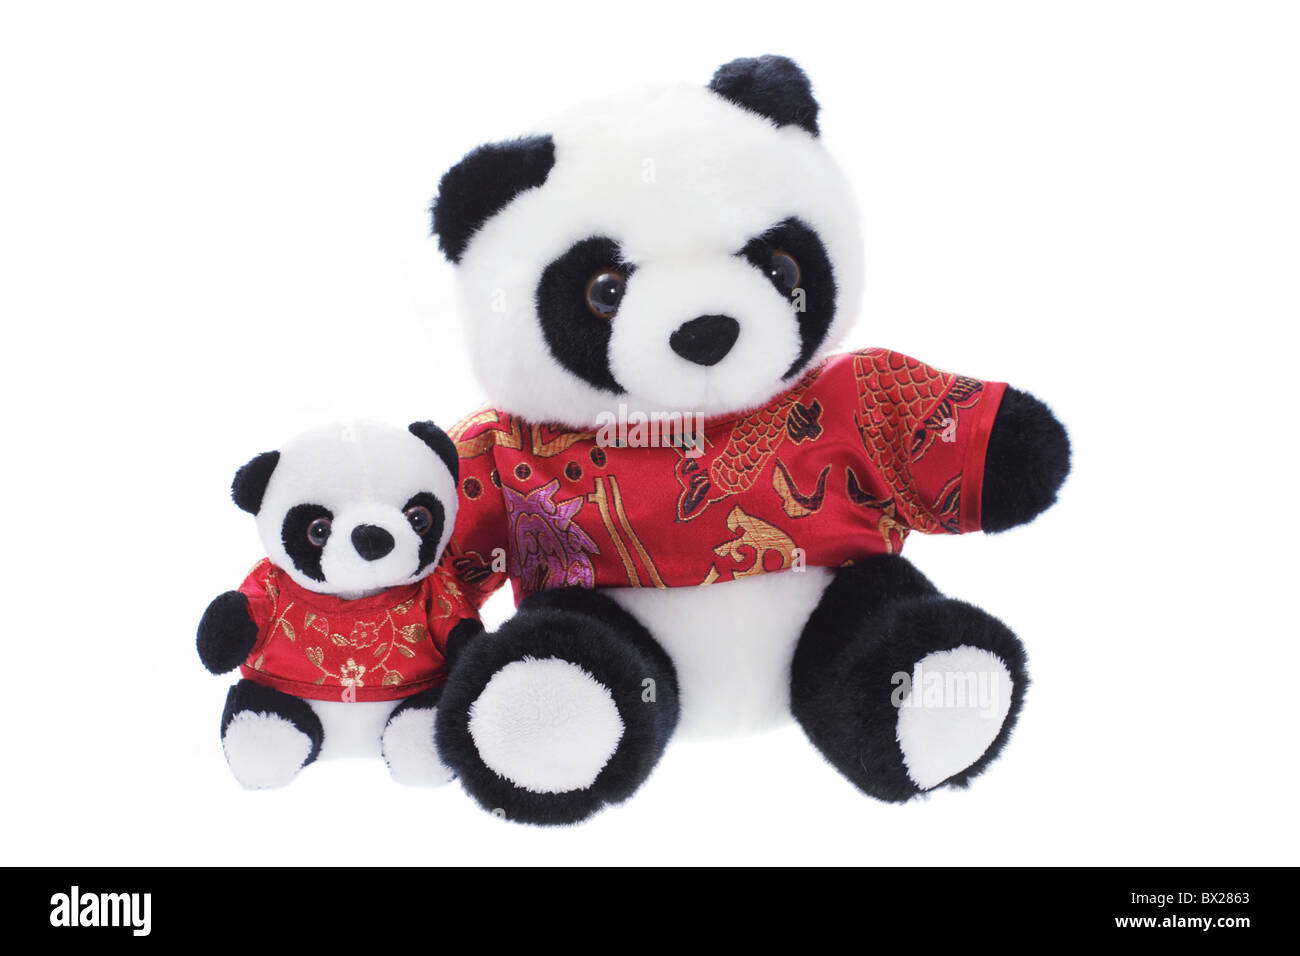 Spielzeug-Pandas Stockfoto